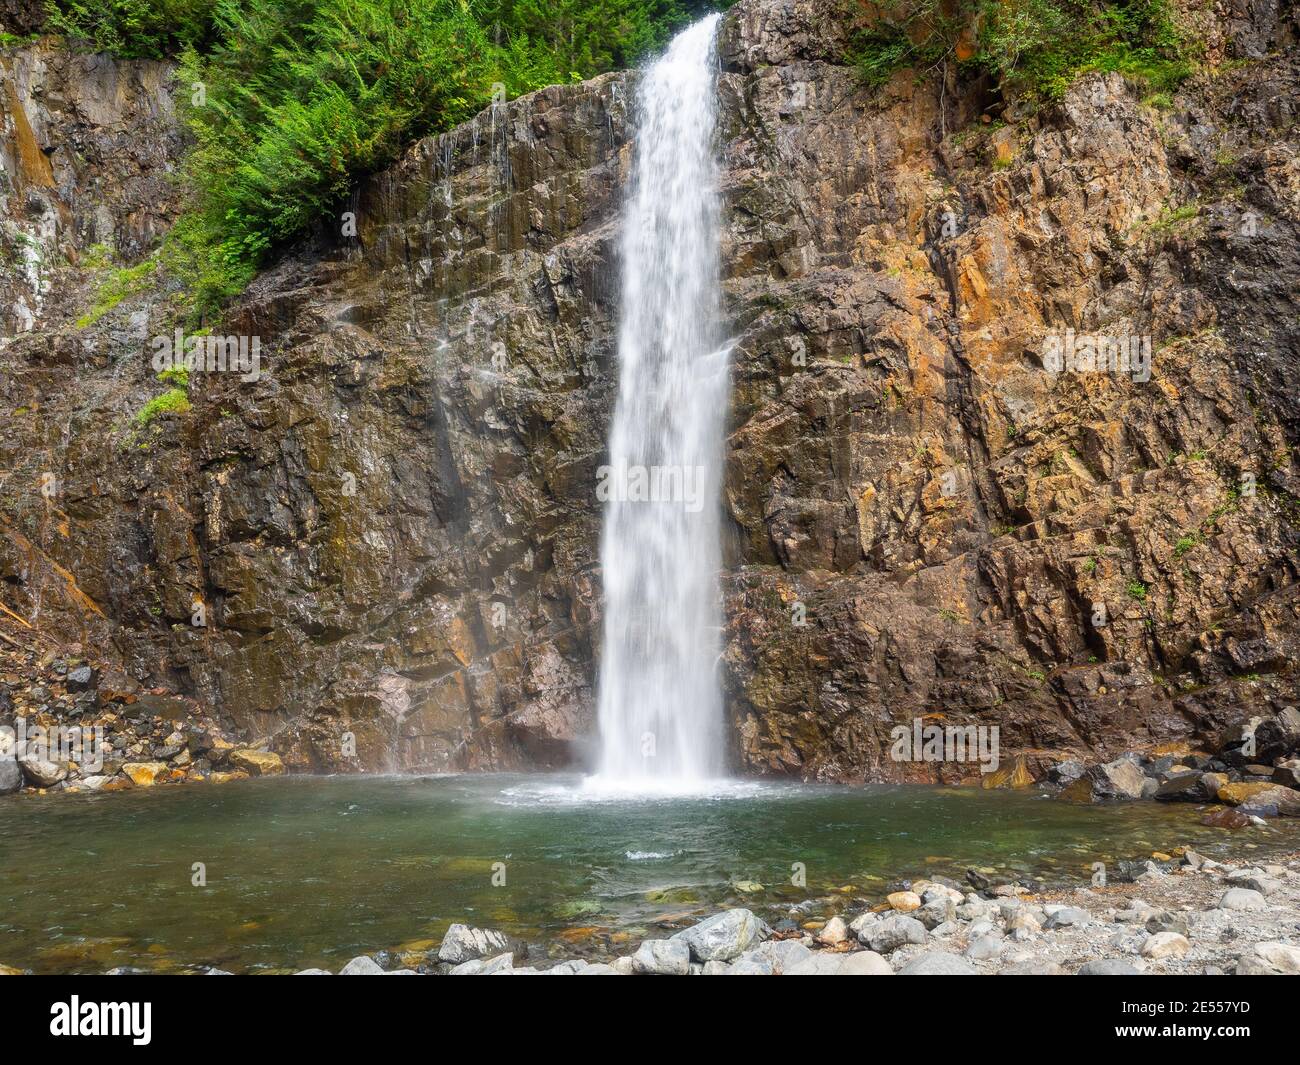 Les chutes Franklin sont une chute d'eau sur la South Fork de la rivière Snoqualmie, la première des trois principales chutes d'eau de la rivière Snoqualmie South Fork. Le f Banque D'Images